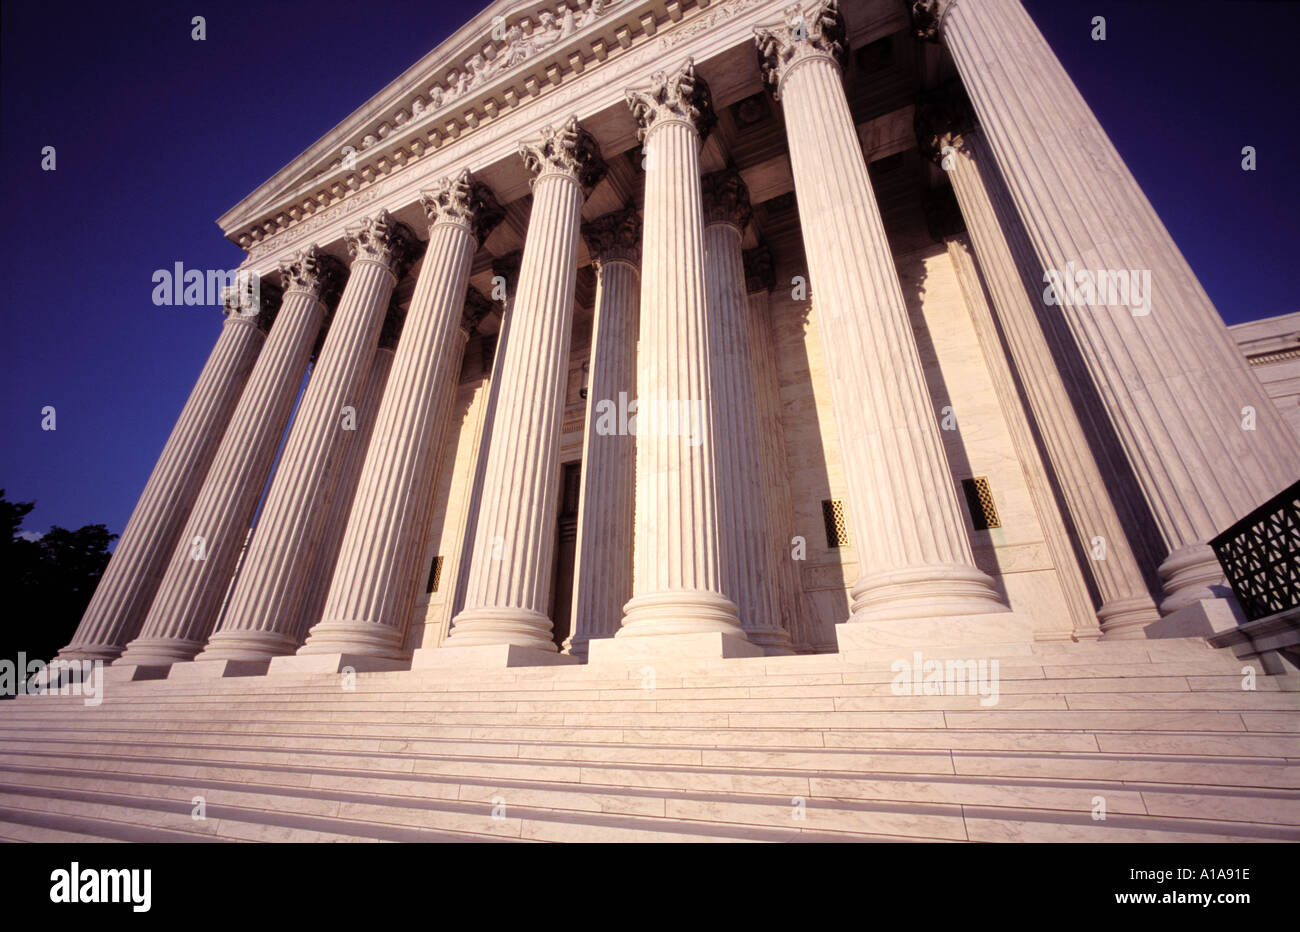 US Supreme Court Building, Washington D.C. Stock Photo